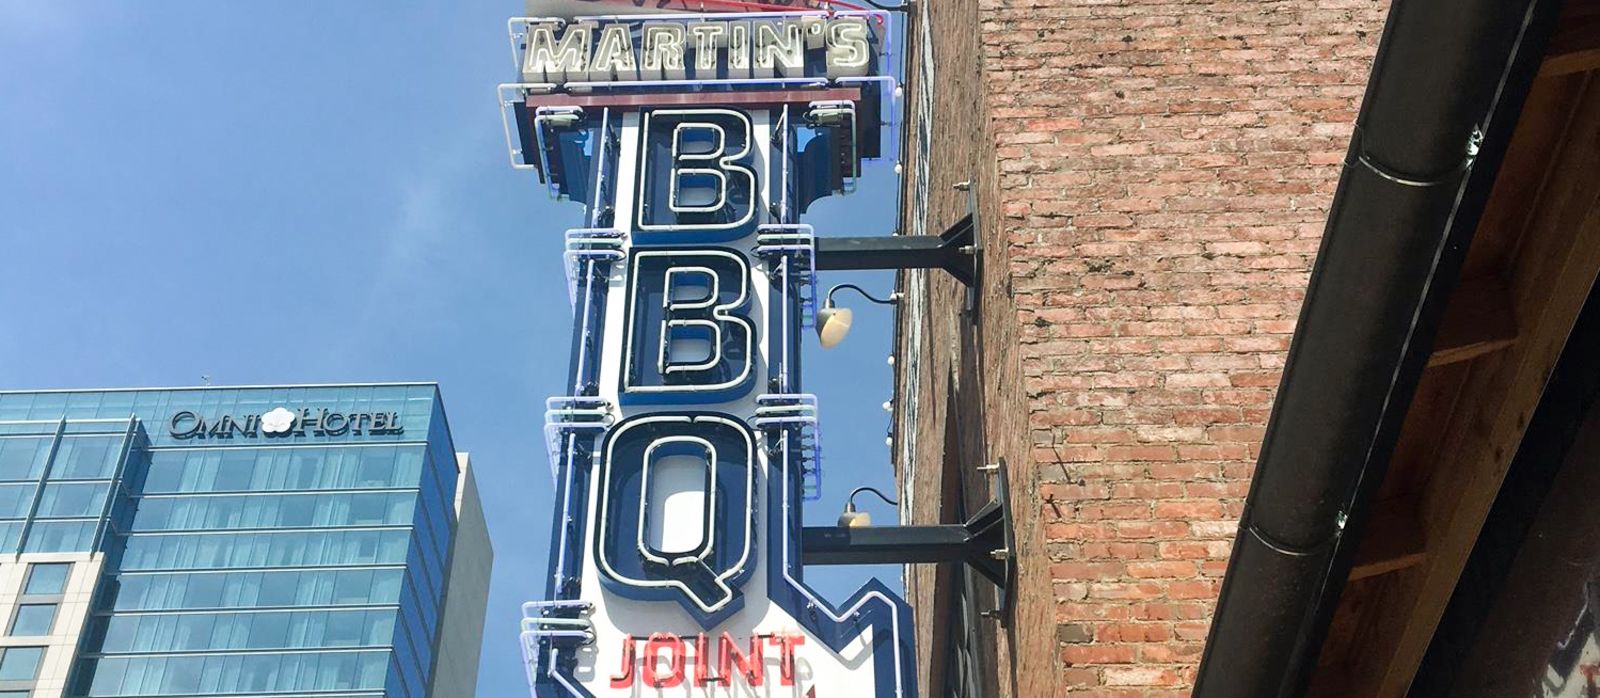 Die Leuchtreklame des Martin's Bar-B-Que Joint in Nashville